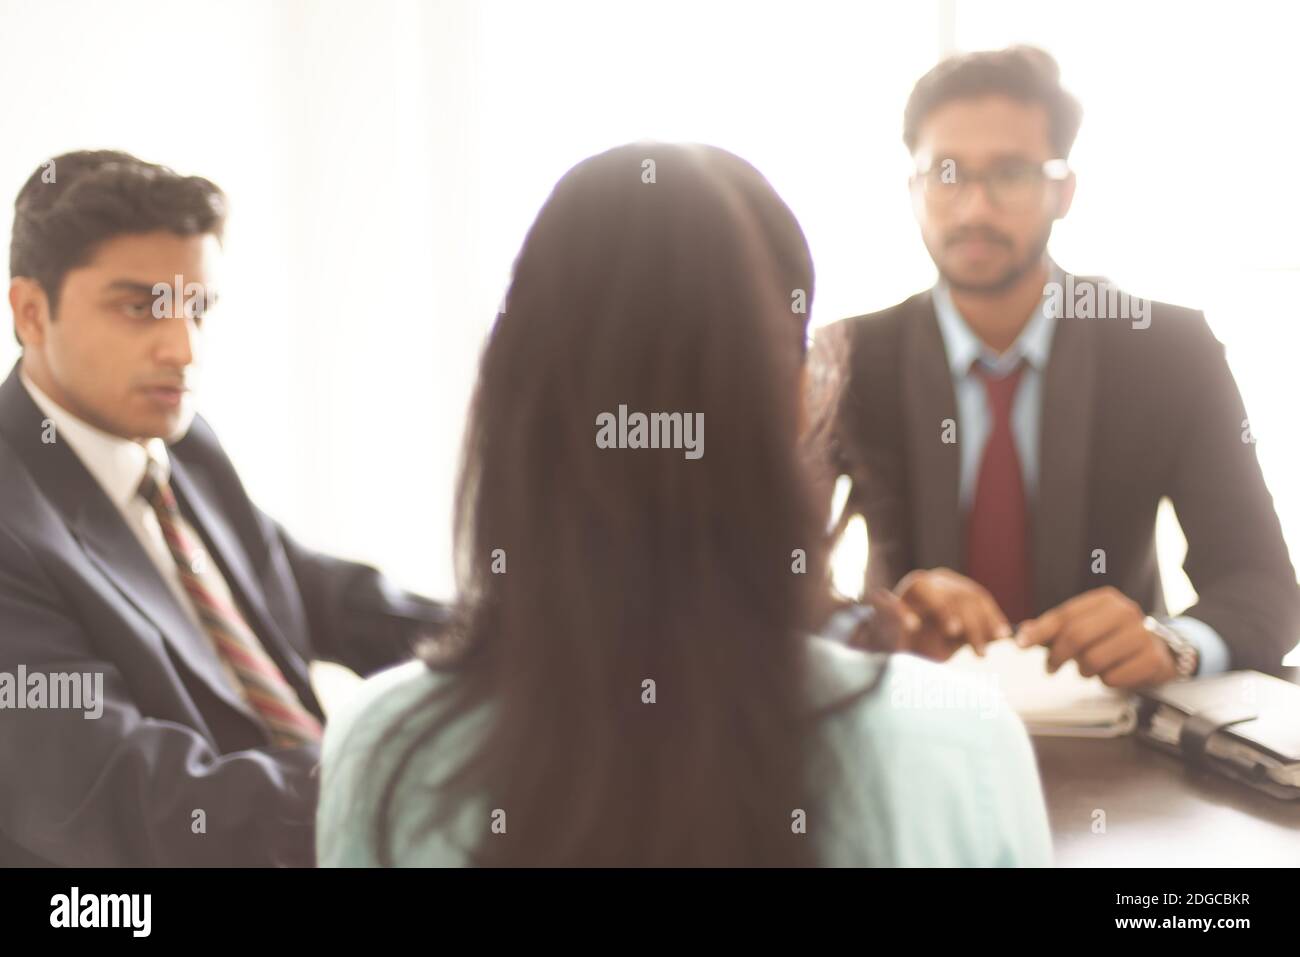 Intervista aziendale di una giovane ed energica candidata femminile in ufficio indiano presa da intervistatore indiano maschio. Azienda indiana. Foto Stock